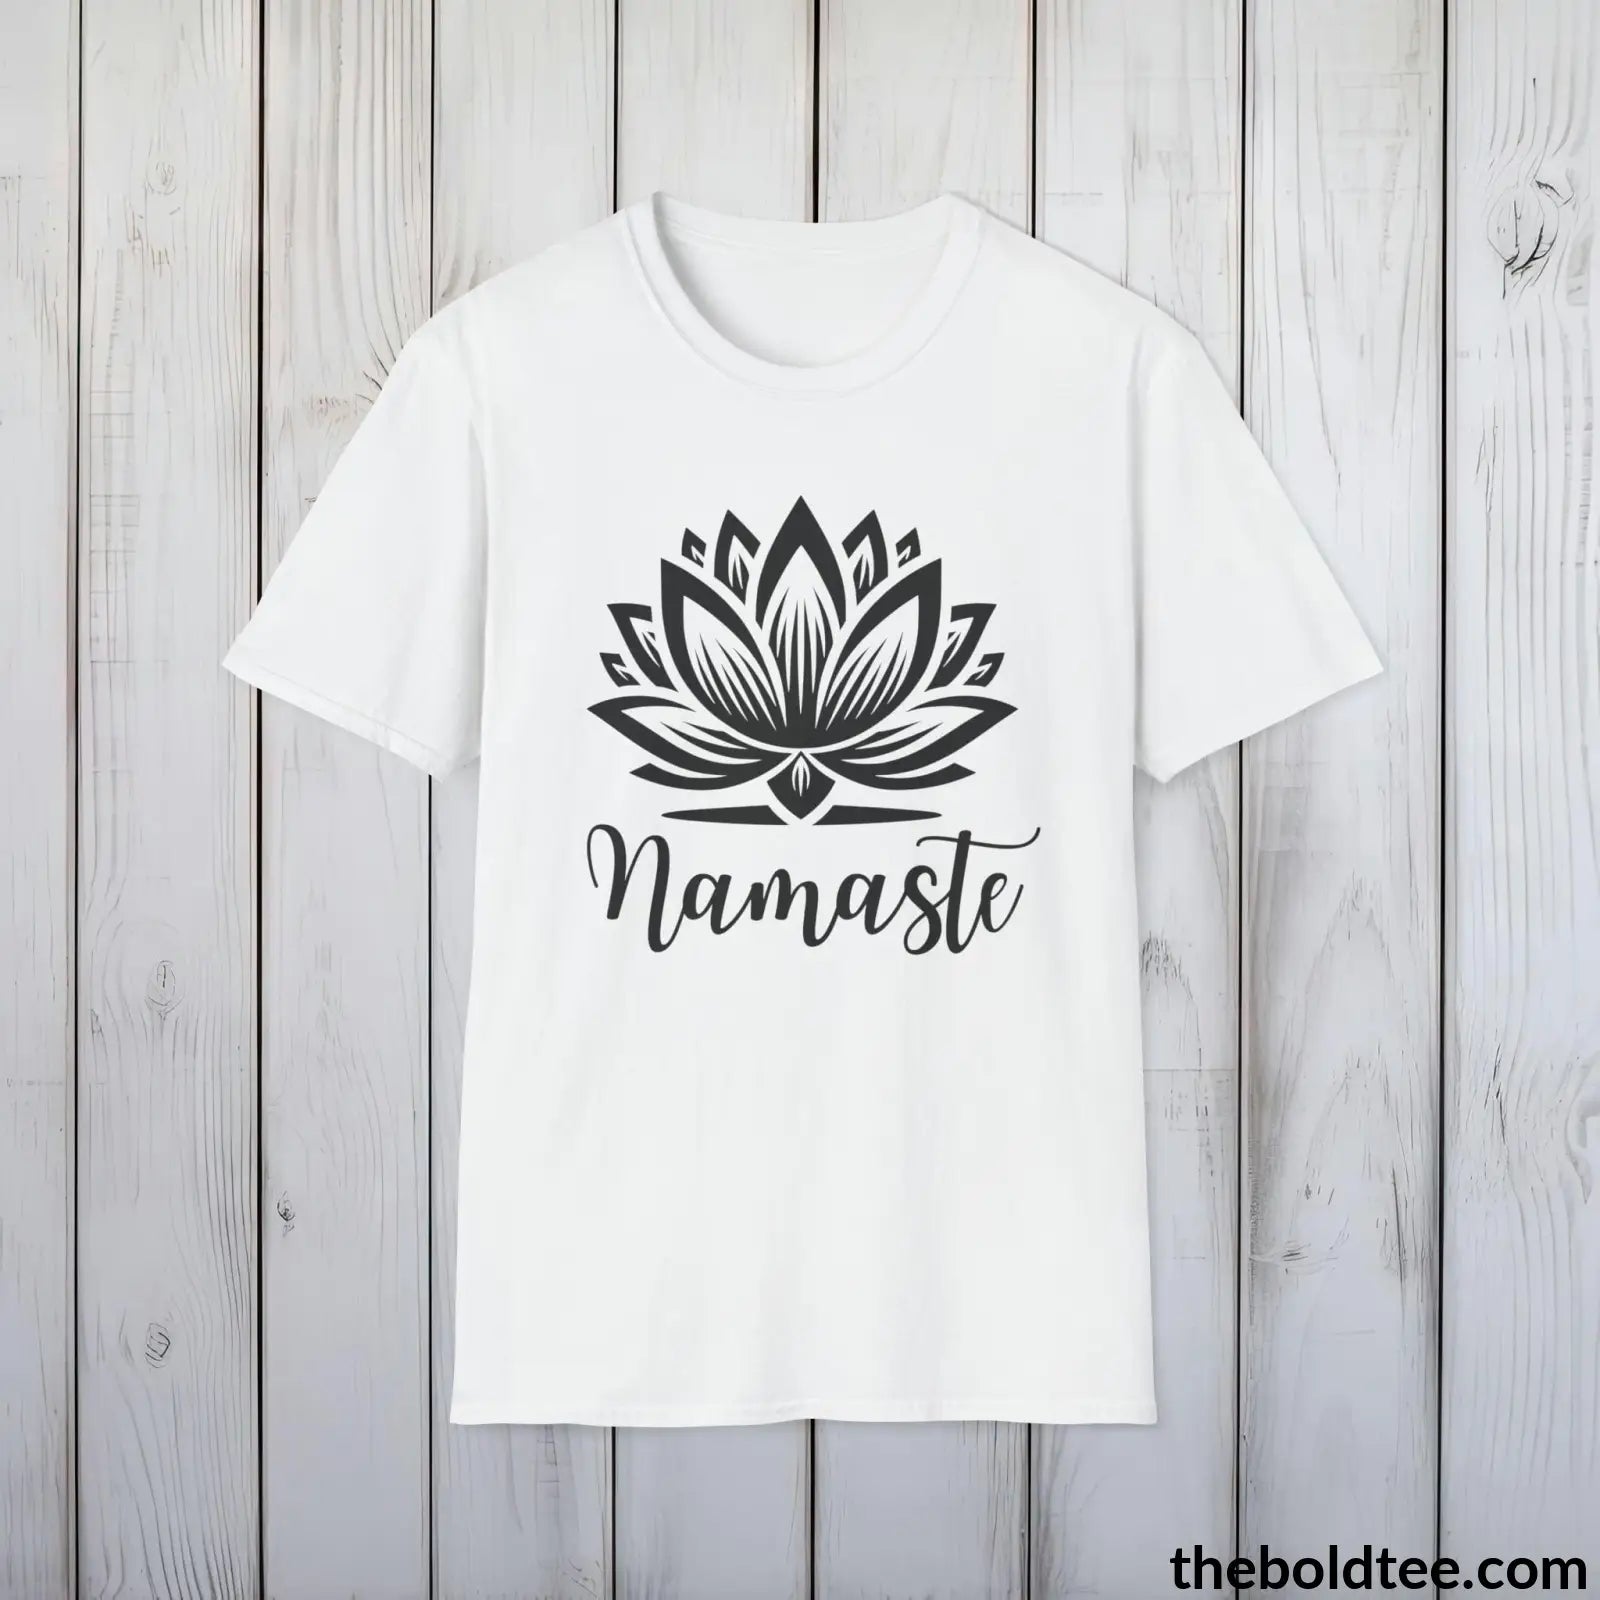 T-Shirt White / S Namaste Yoga Tee - Sustainable & Soft Cotton Crewneck Unisex T-Shirt - 9 Bold Colors